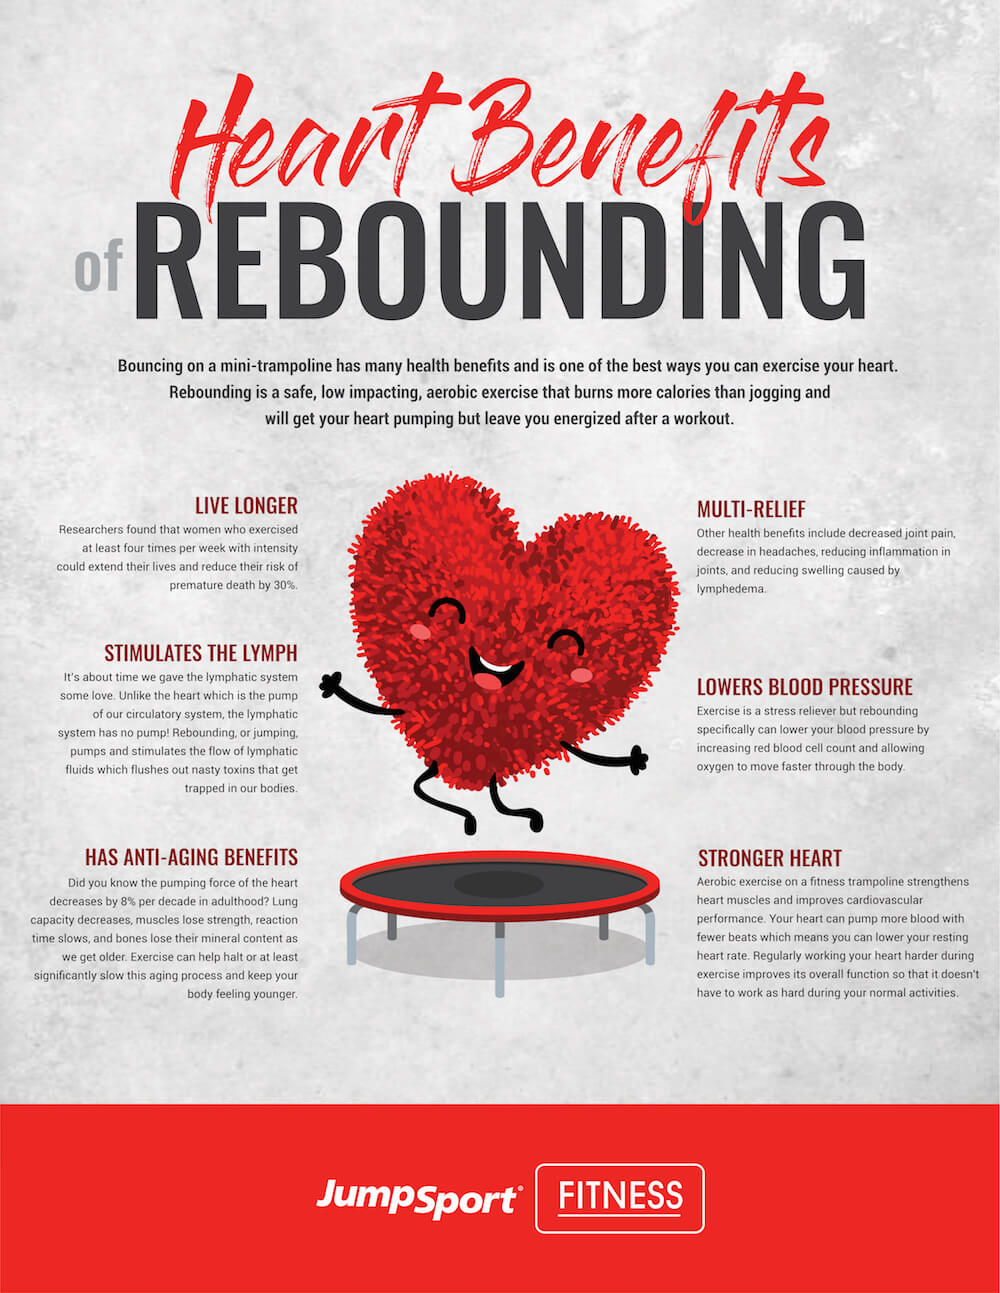 Benefits of Rebounding